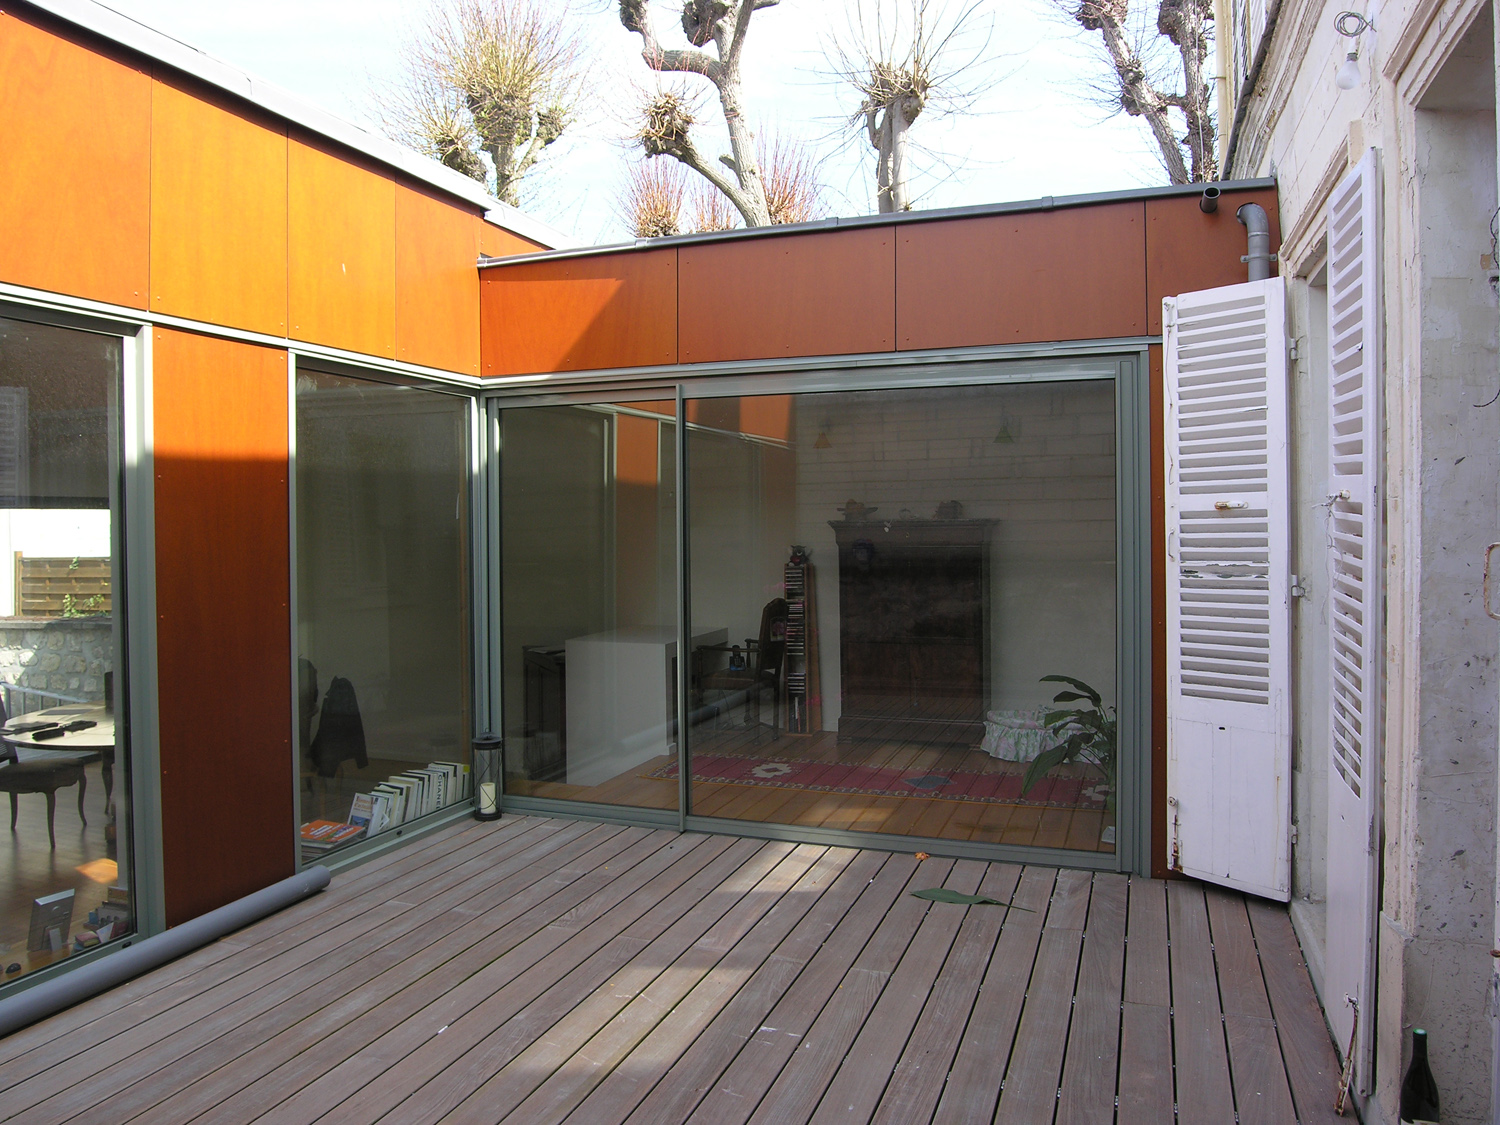 Atelier Prevost architectes - extension d'une maison a l'Isle-adam